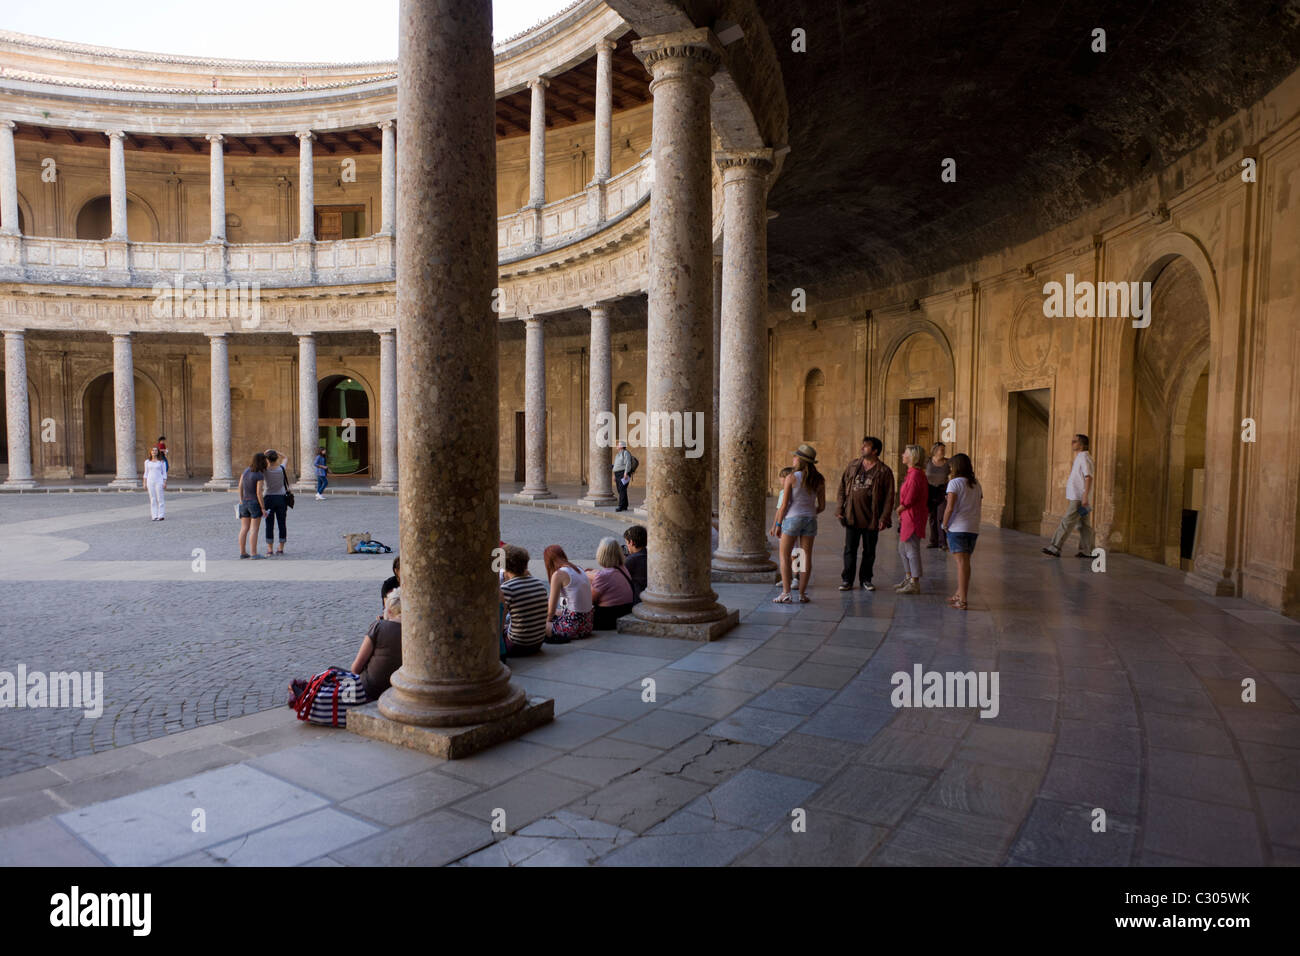 Les visiteurs admirer le cercle intérieur du Palacio de Carlos V à Alhambra, Grenade. Banque D'Images